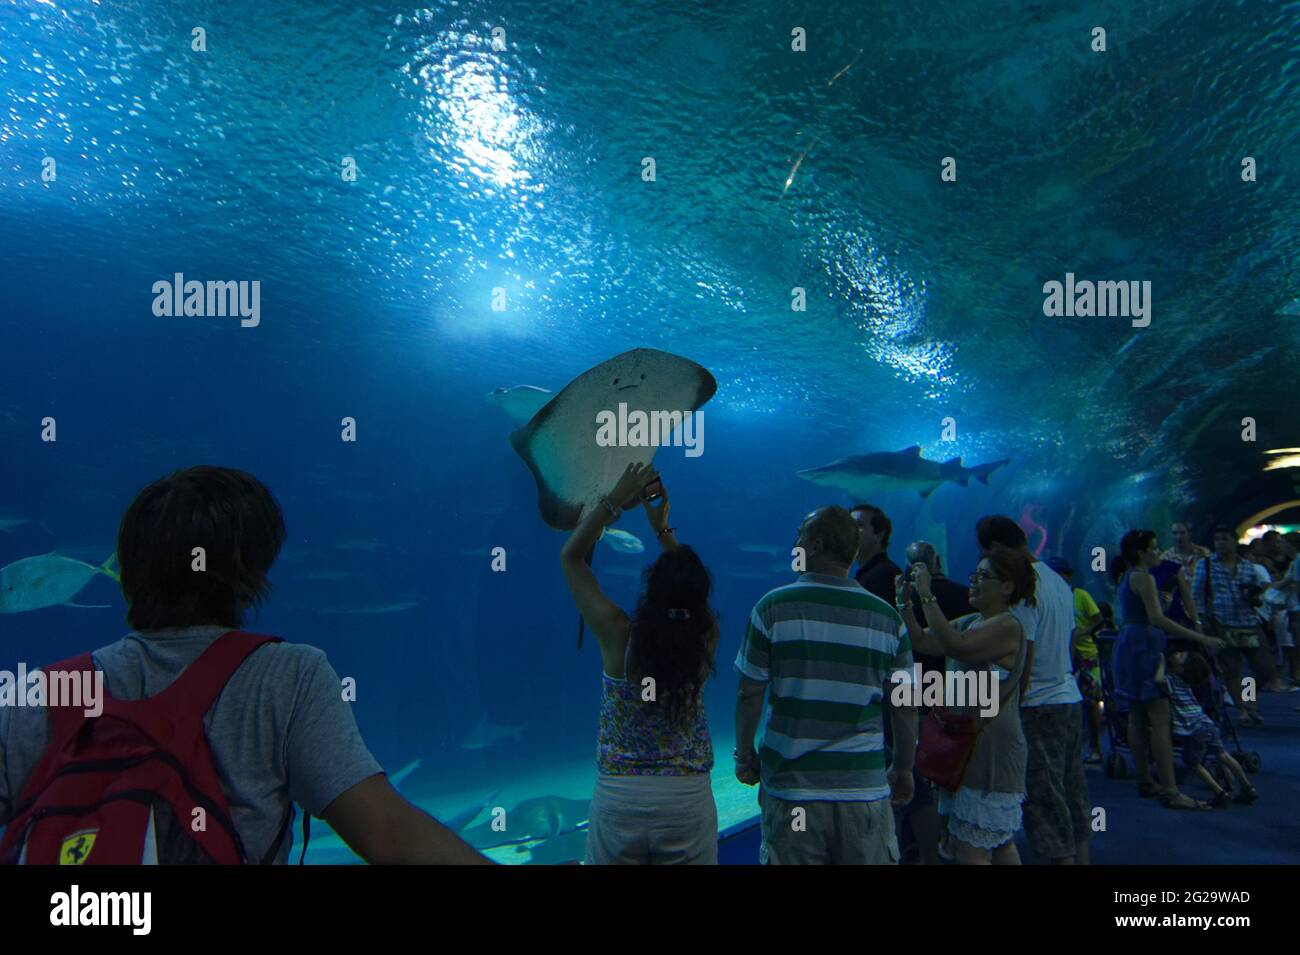 Oceanogràfic of Valencia - the biggest aquarium in Europe Stock Photo